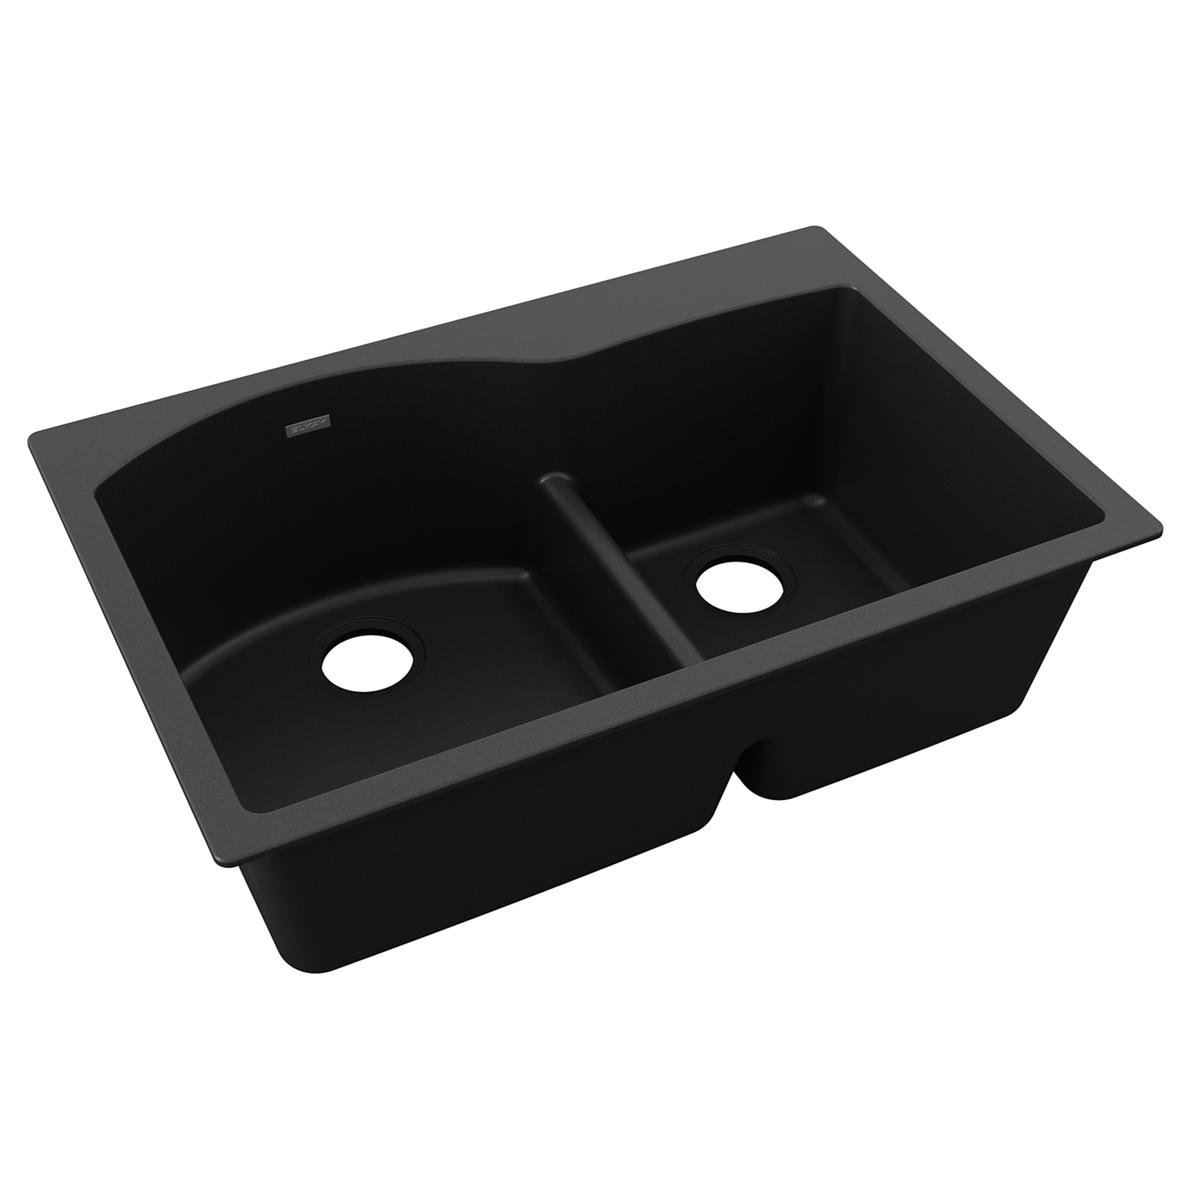 black double bowl drop-in sink